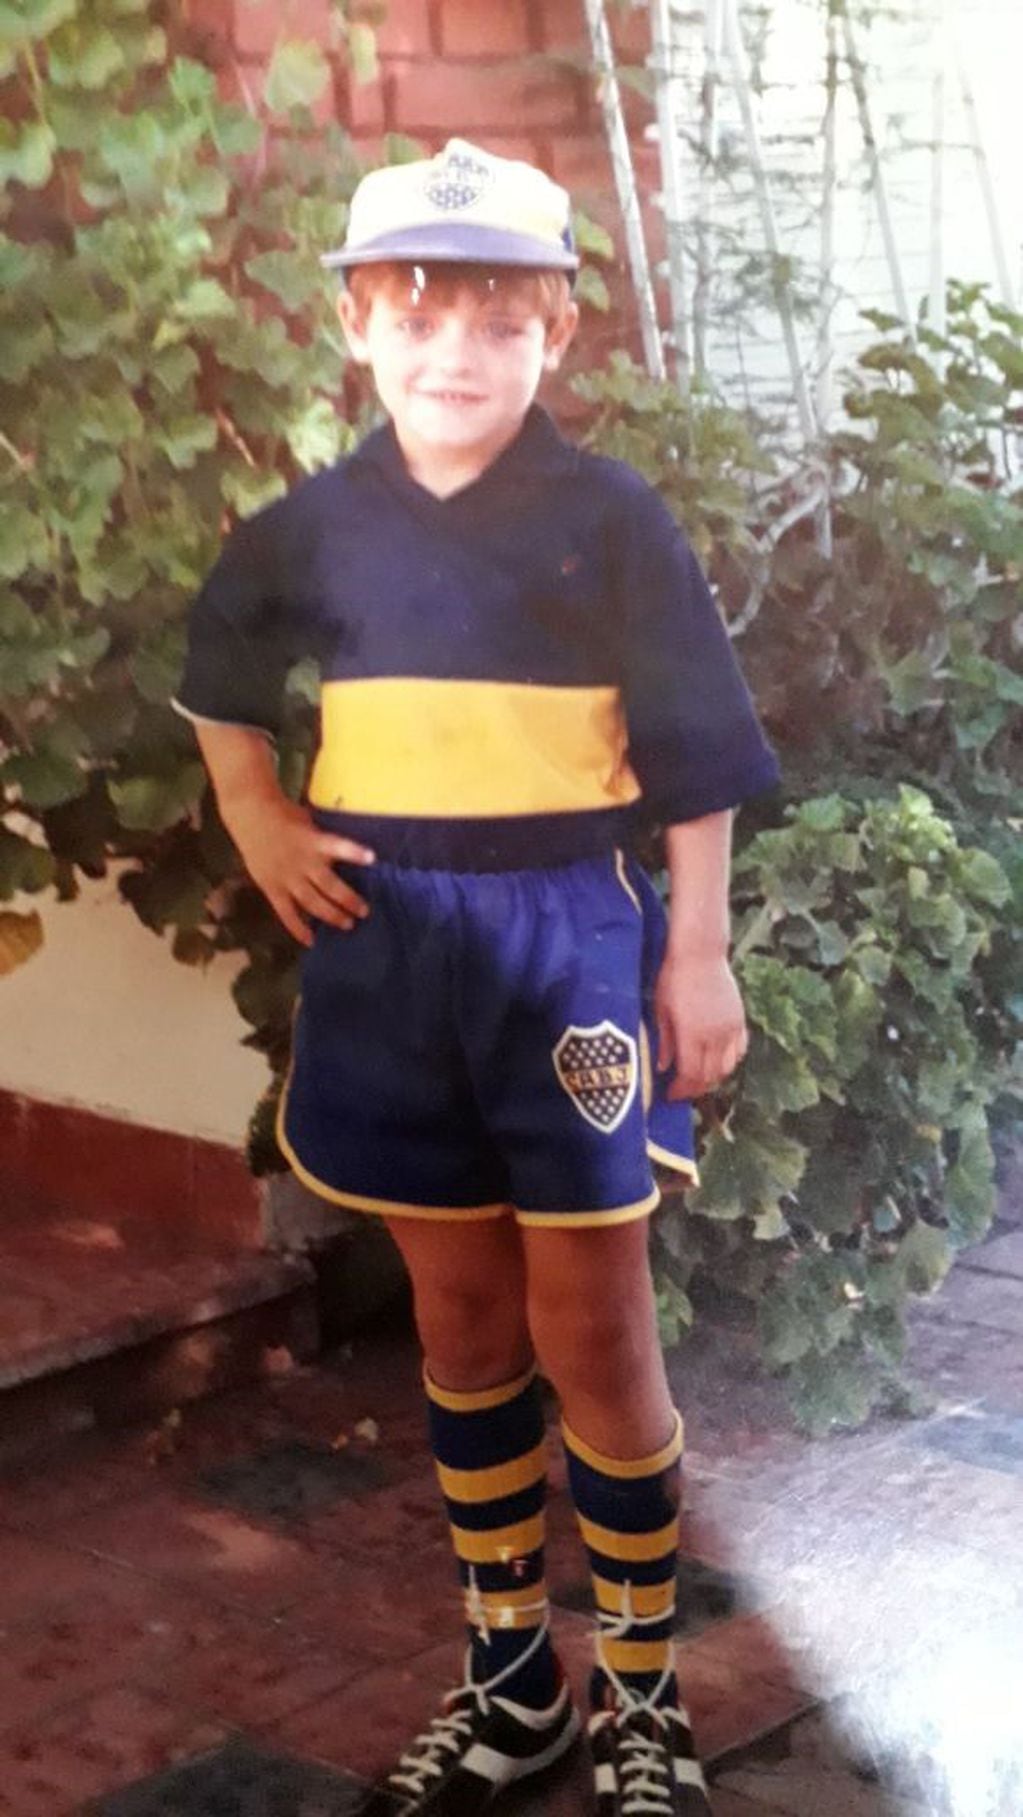 A sus cinco años y con el conjunto de Boca Juniors regalado por su abuelo cuando nació